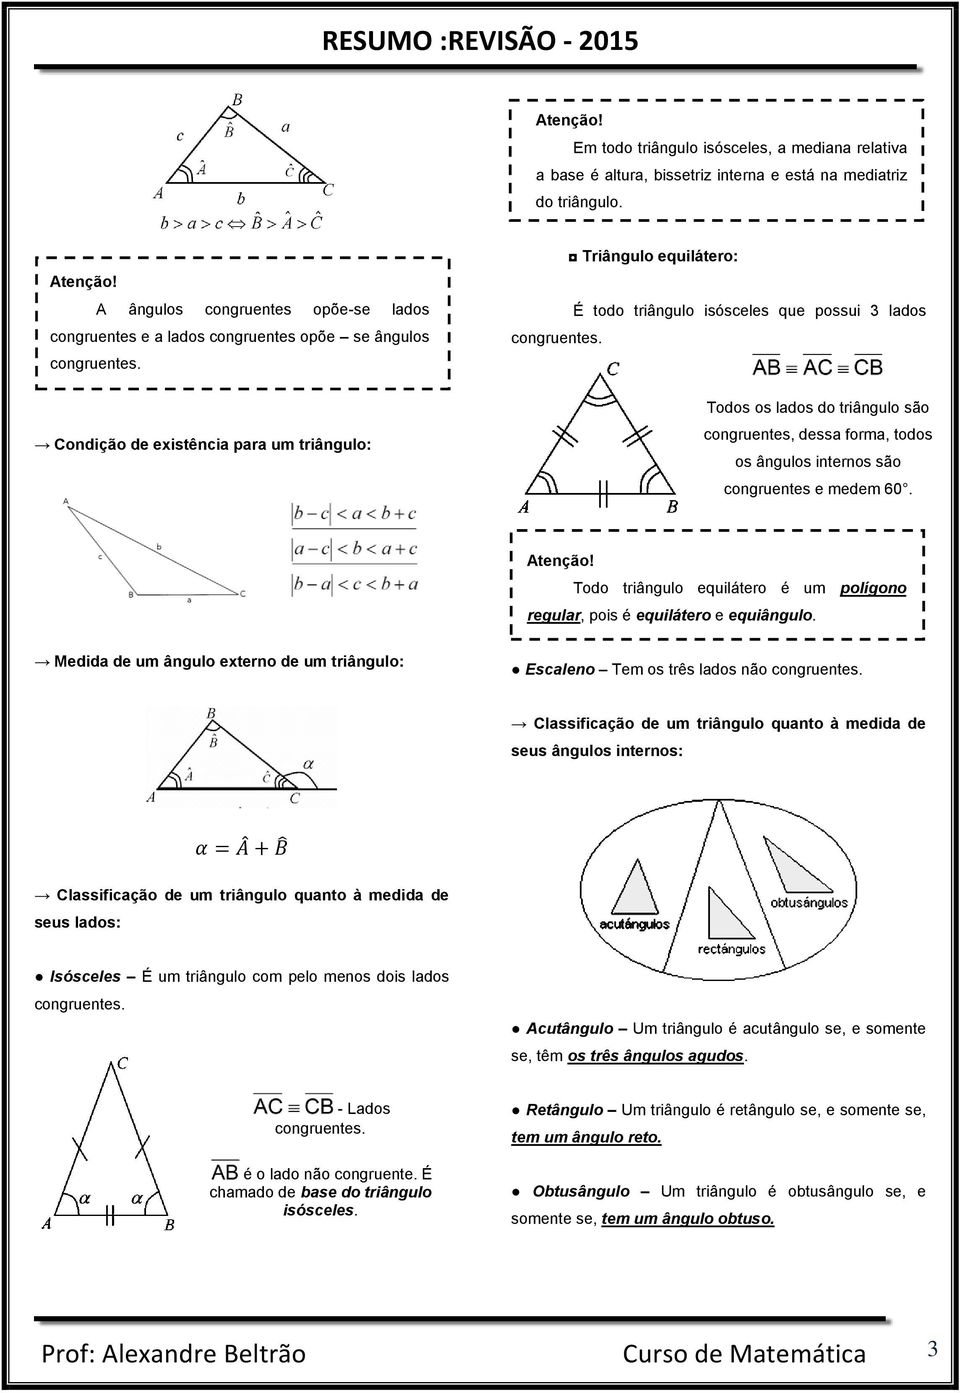 Condição de existência para um triângulo: Triângulo equilátero: É todo triângulo isósceles que possui 3 lados congruentes.